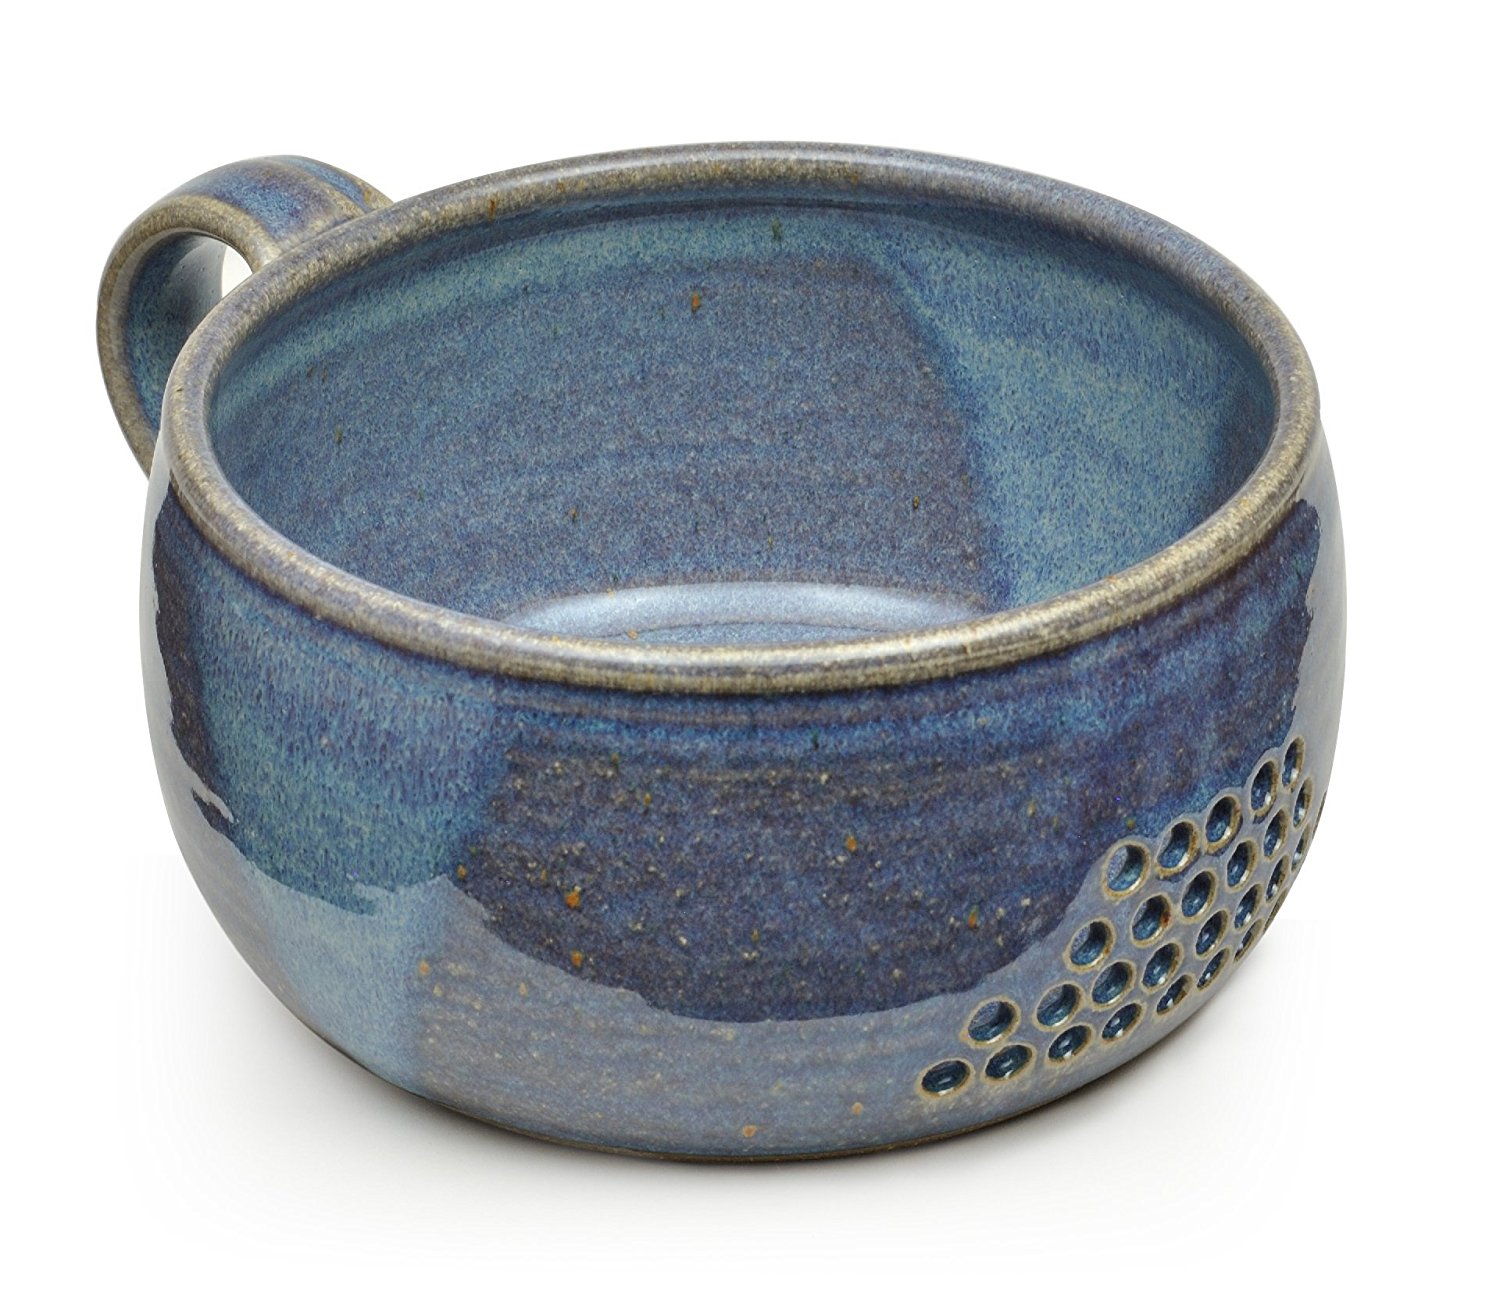 Amazon.com: GW Pottery Handmade Stoneware Berry Bowl/Colander, Blue ...